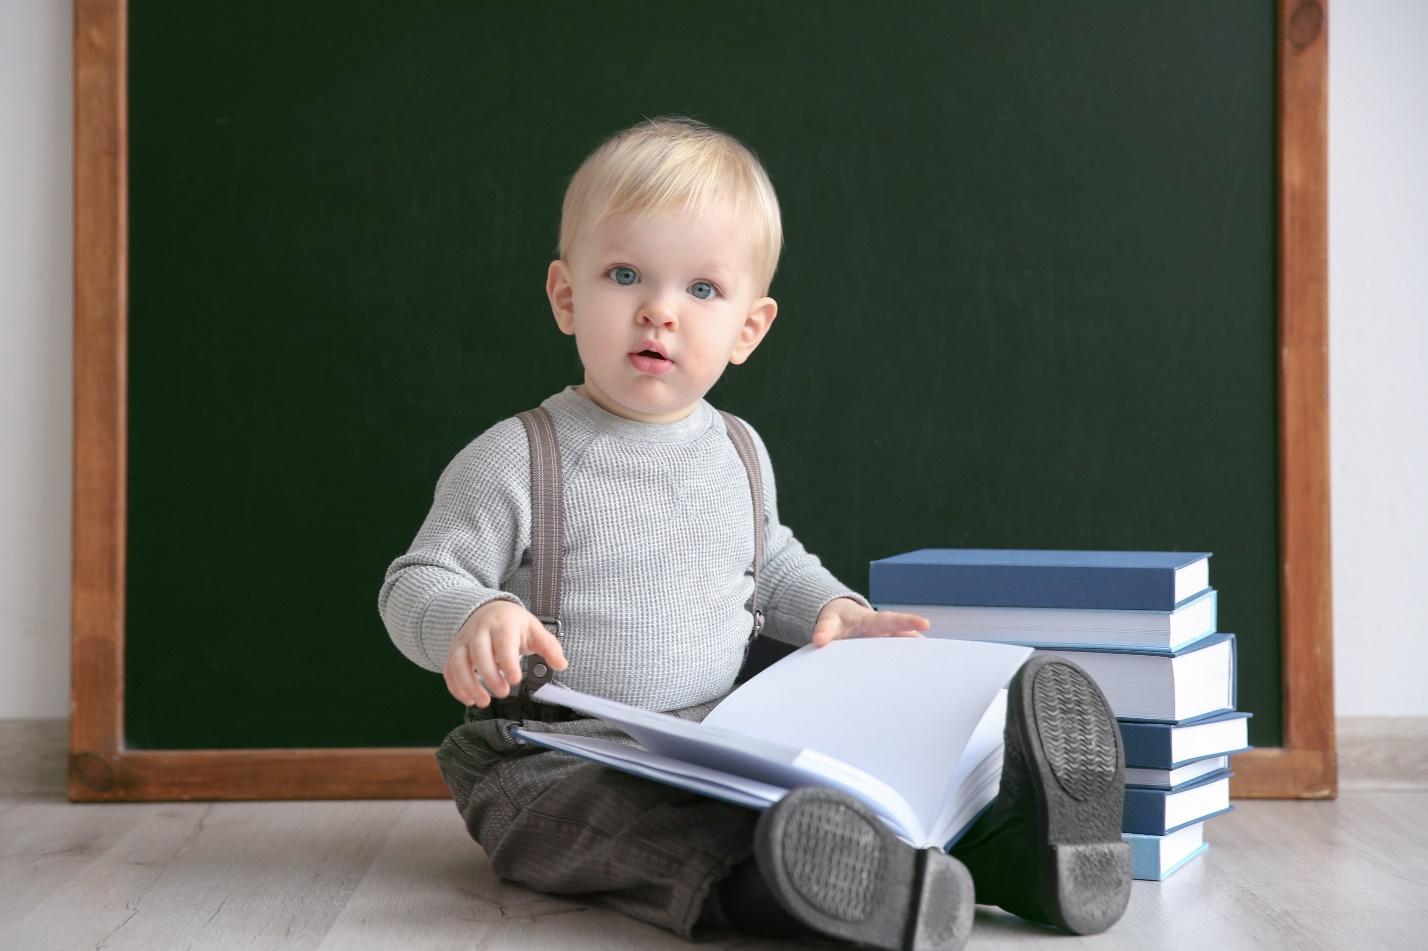 ТОП-5 лучших методов воспитания и обучения малышей для педагогов